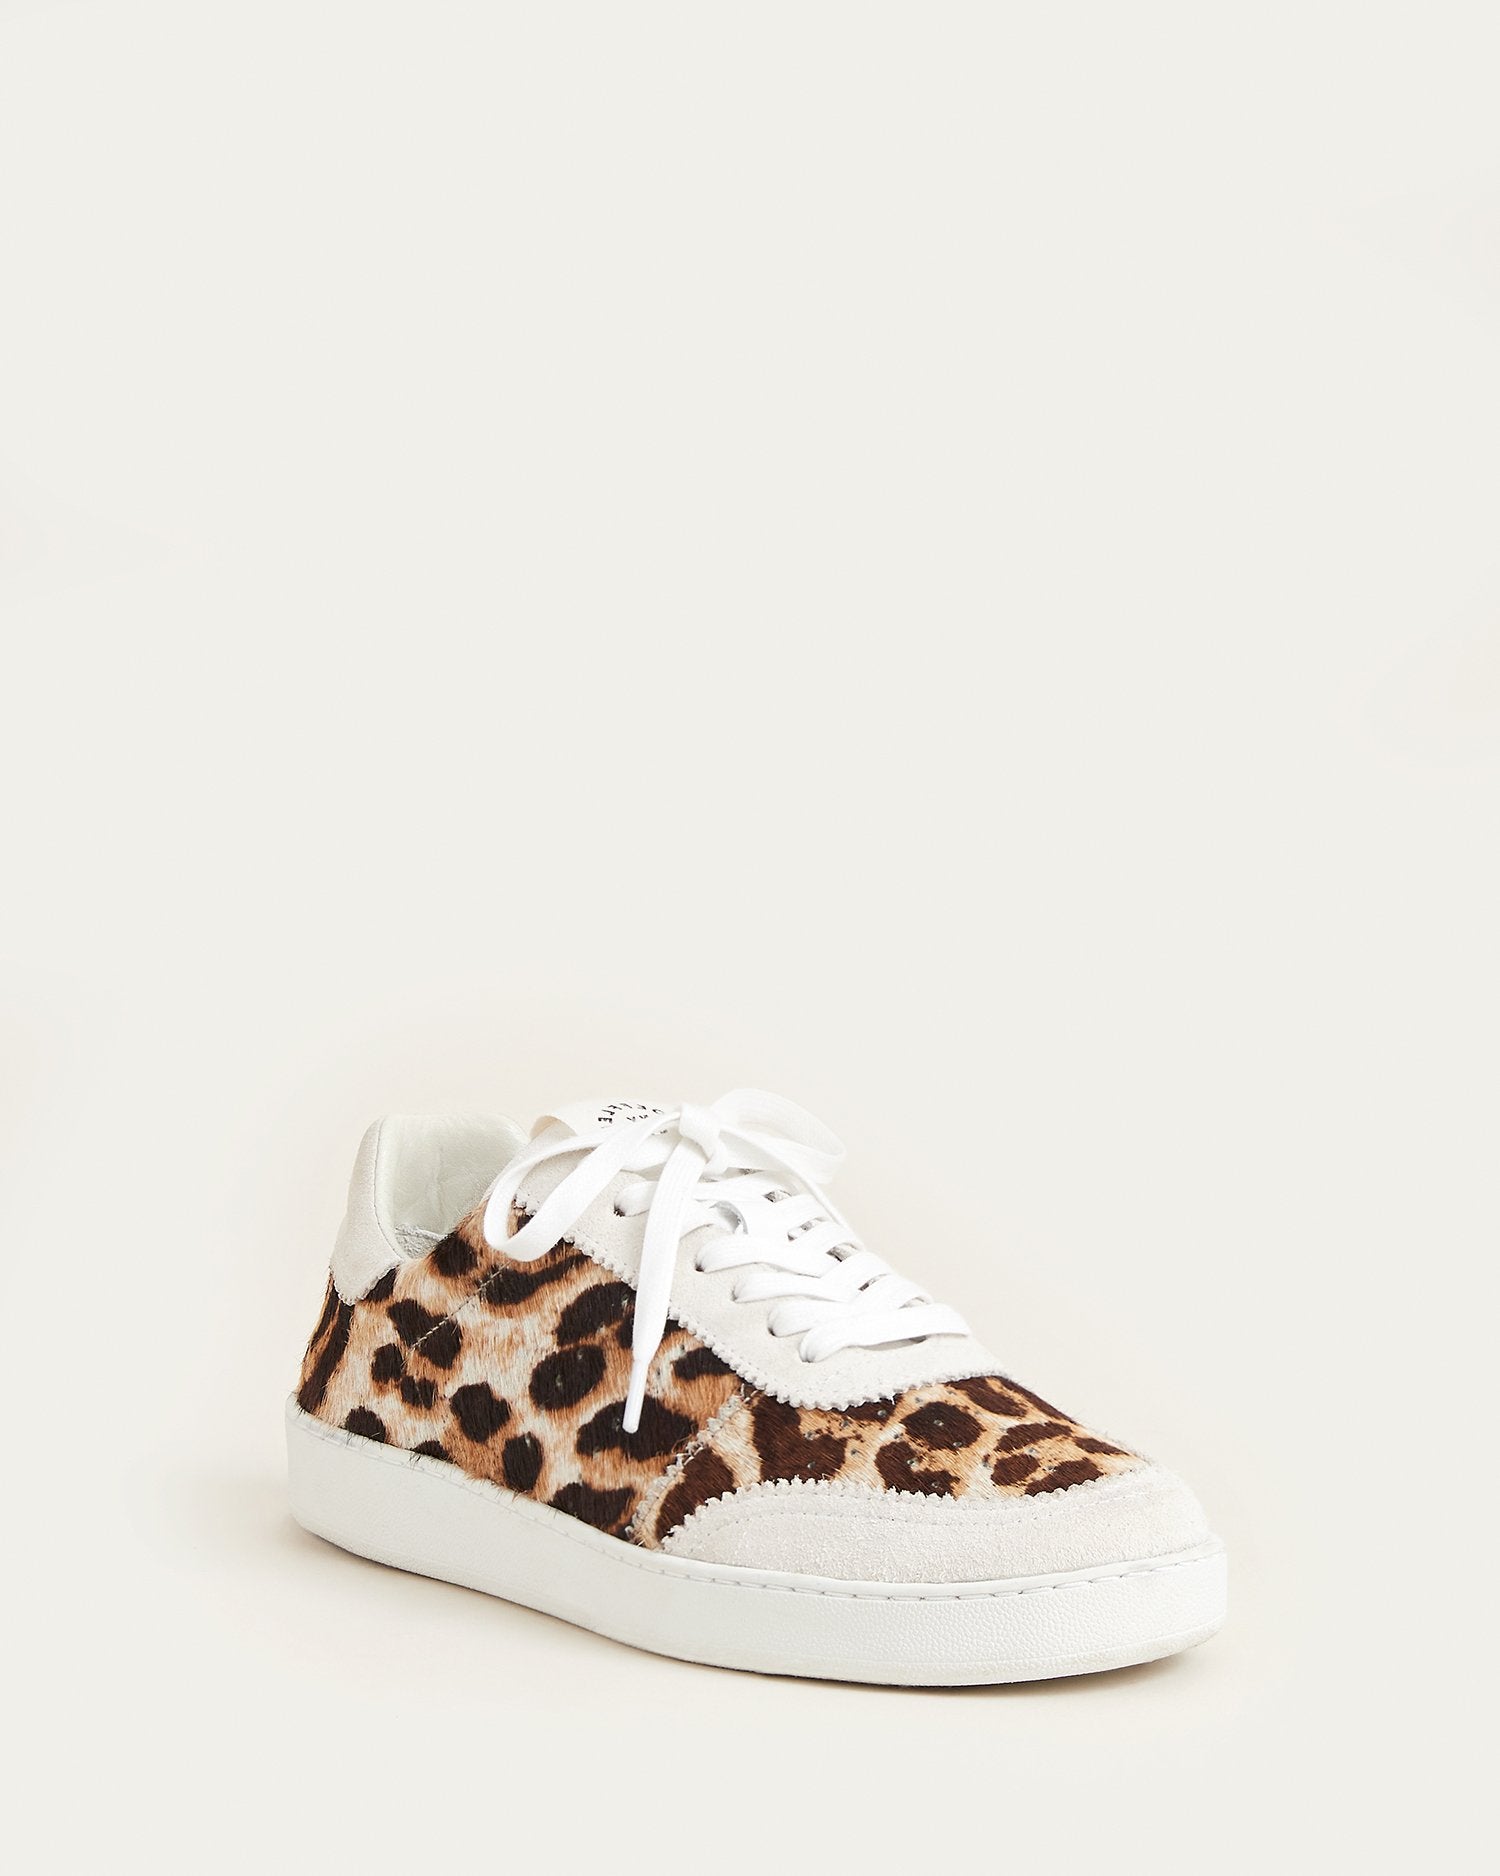 loeffler randall leopard sneakers